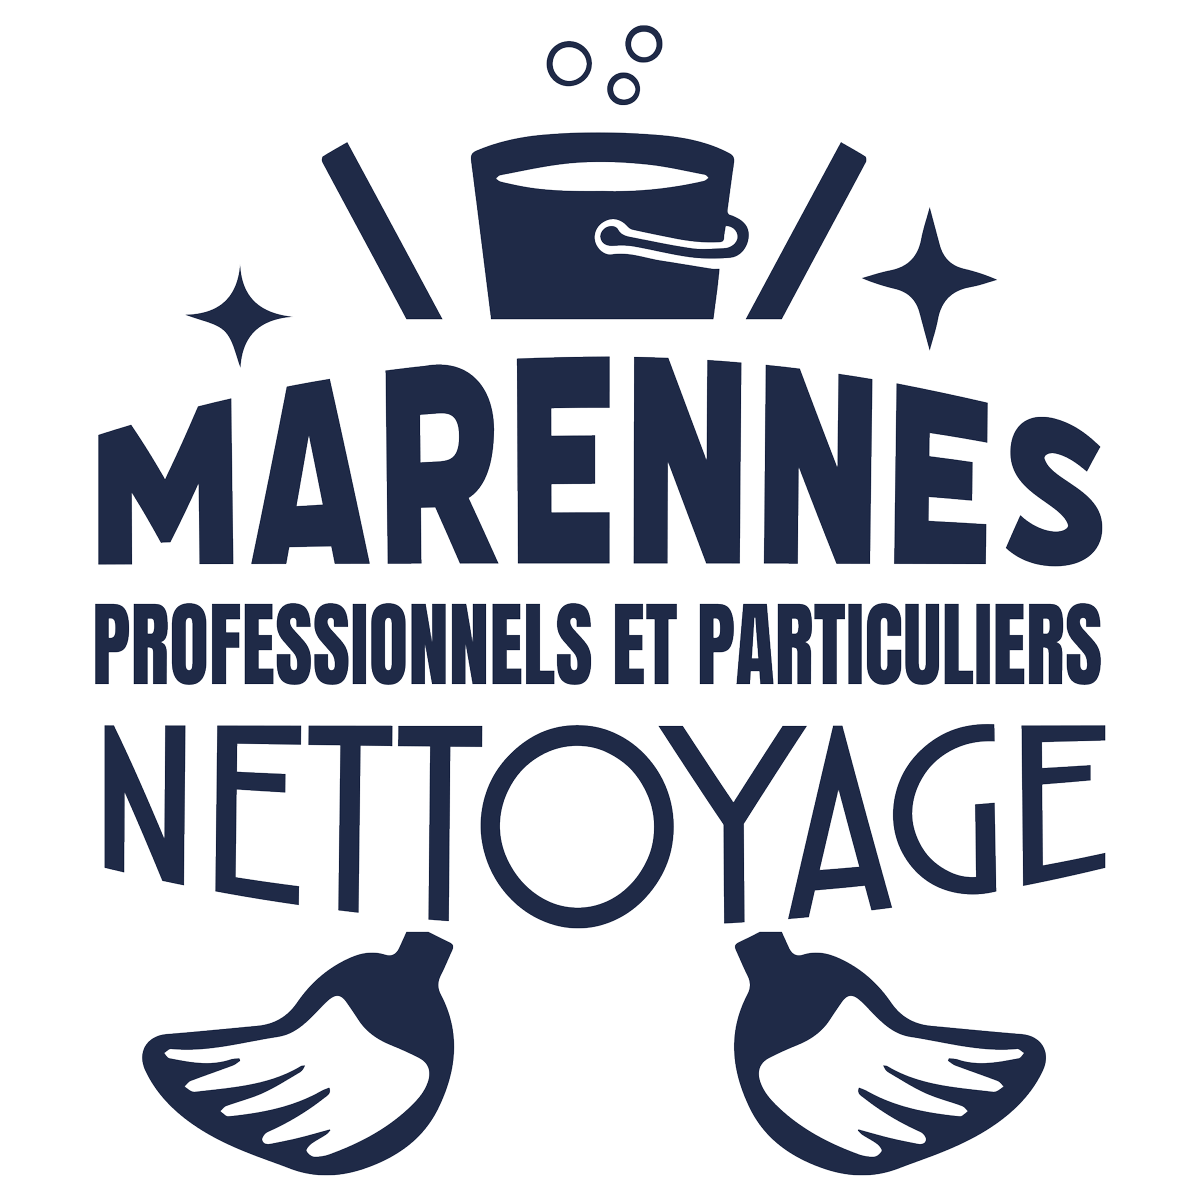 Marennes Nettoyage - Professionnels et Particuliers